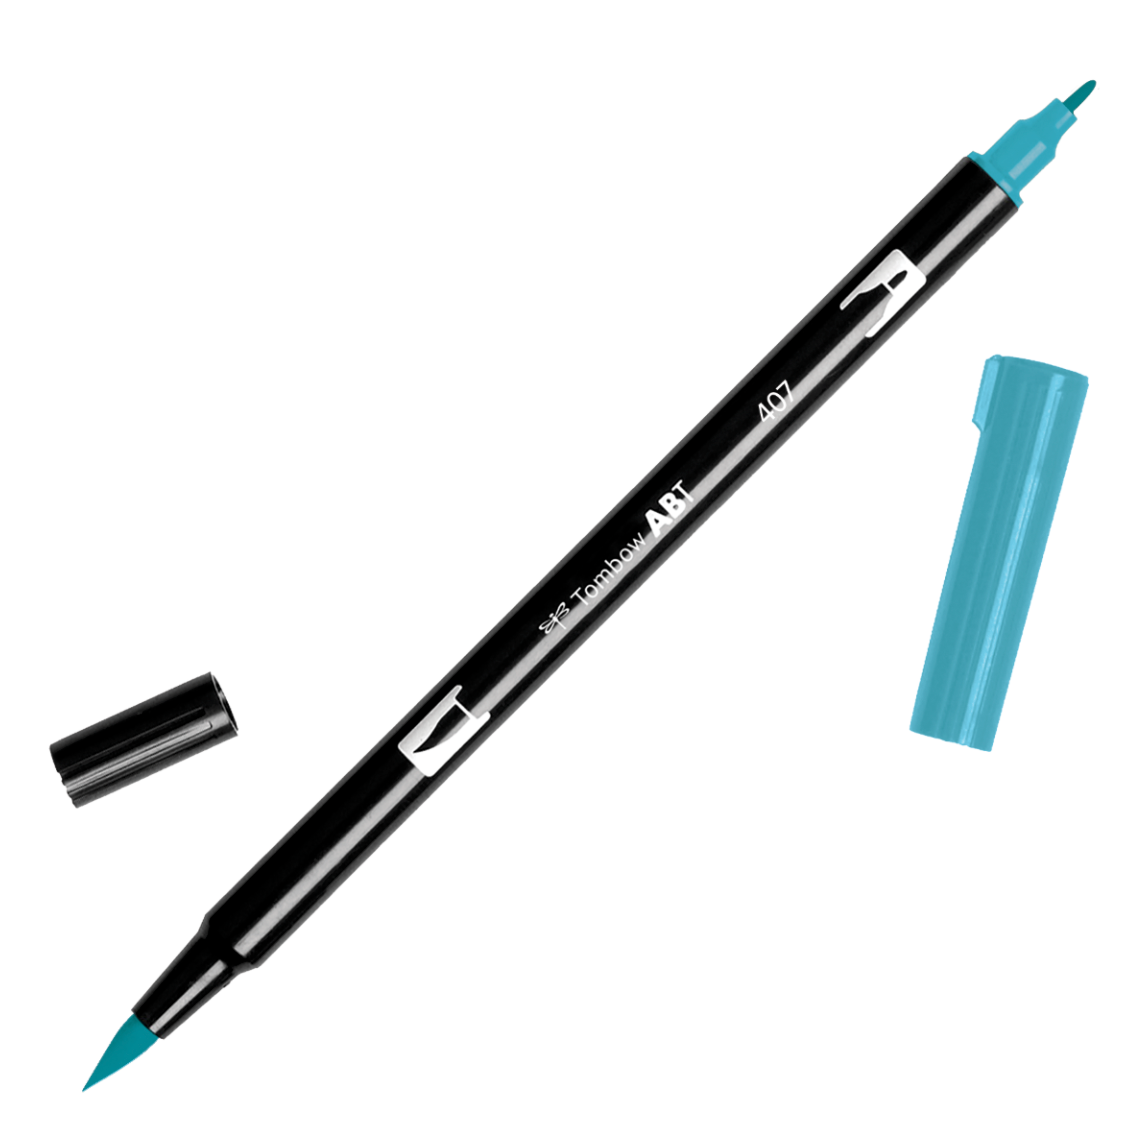 Brush Pens for Brushlettering